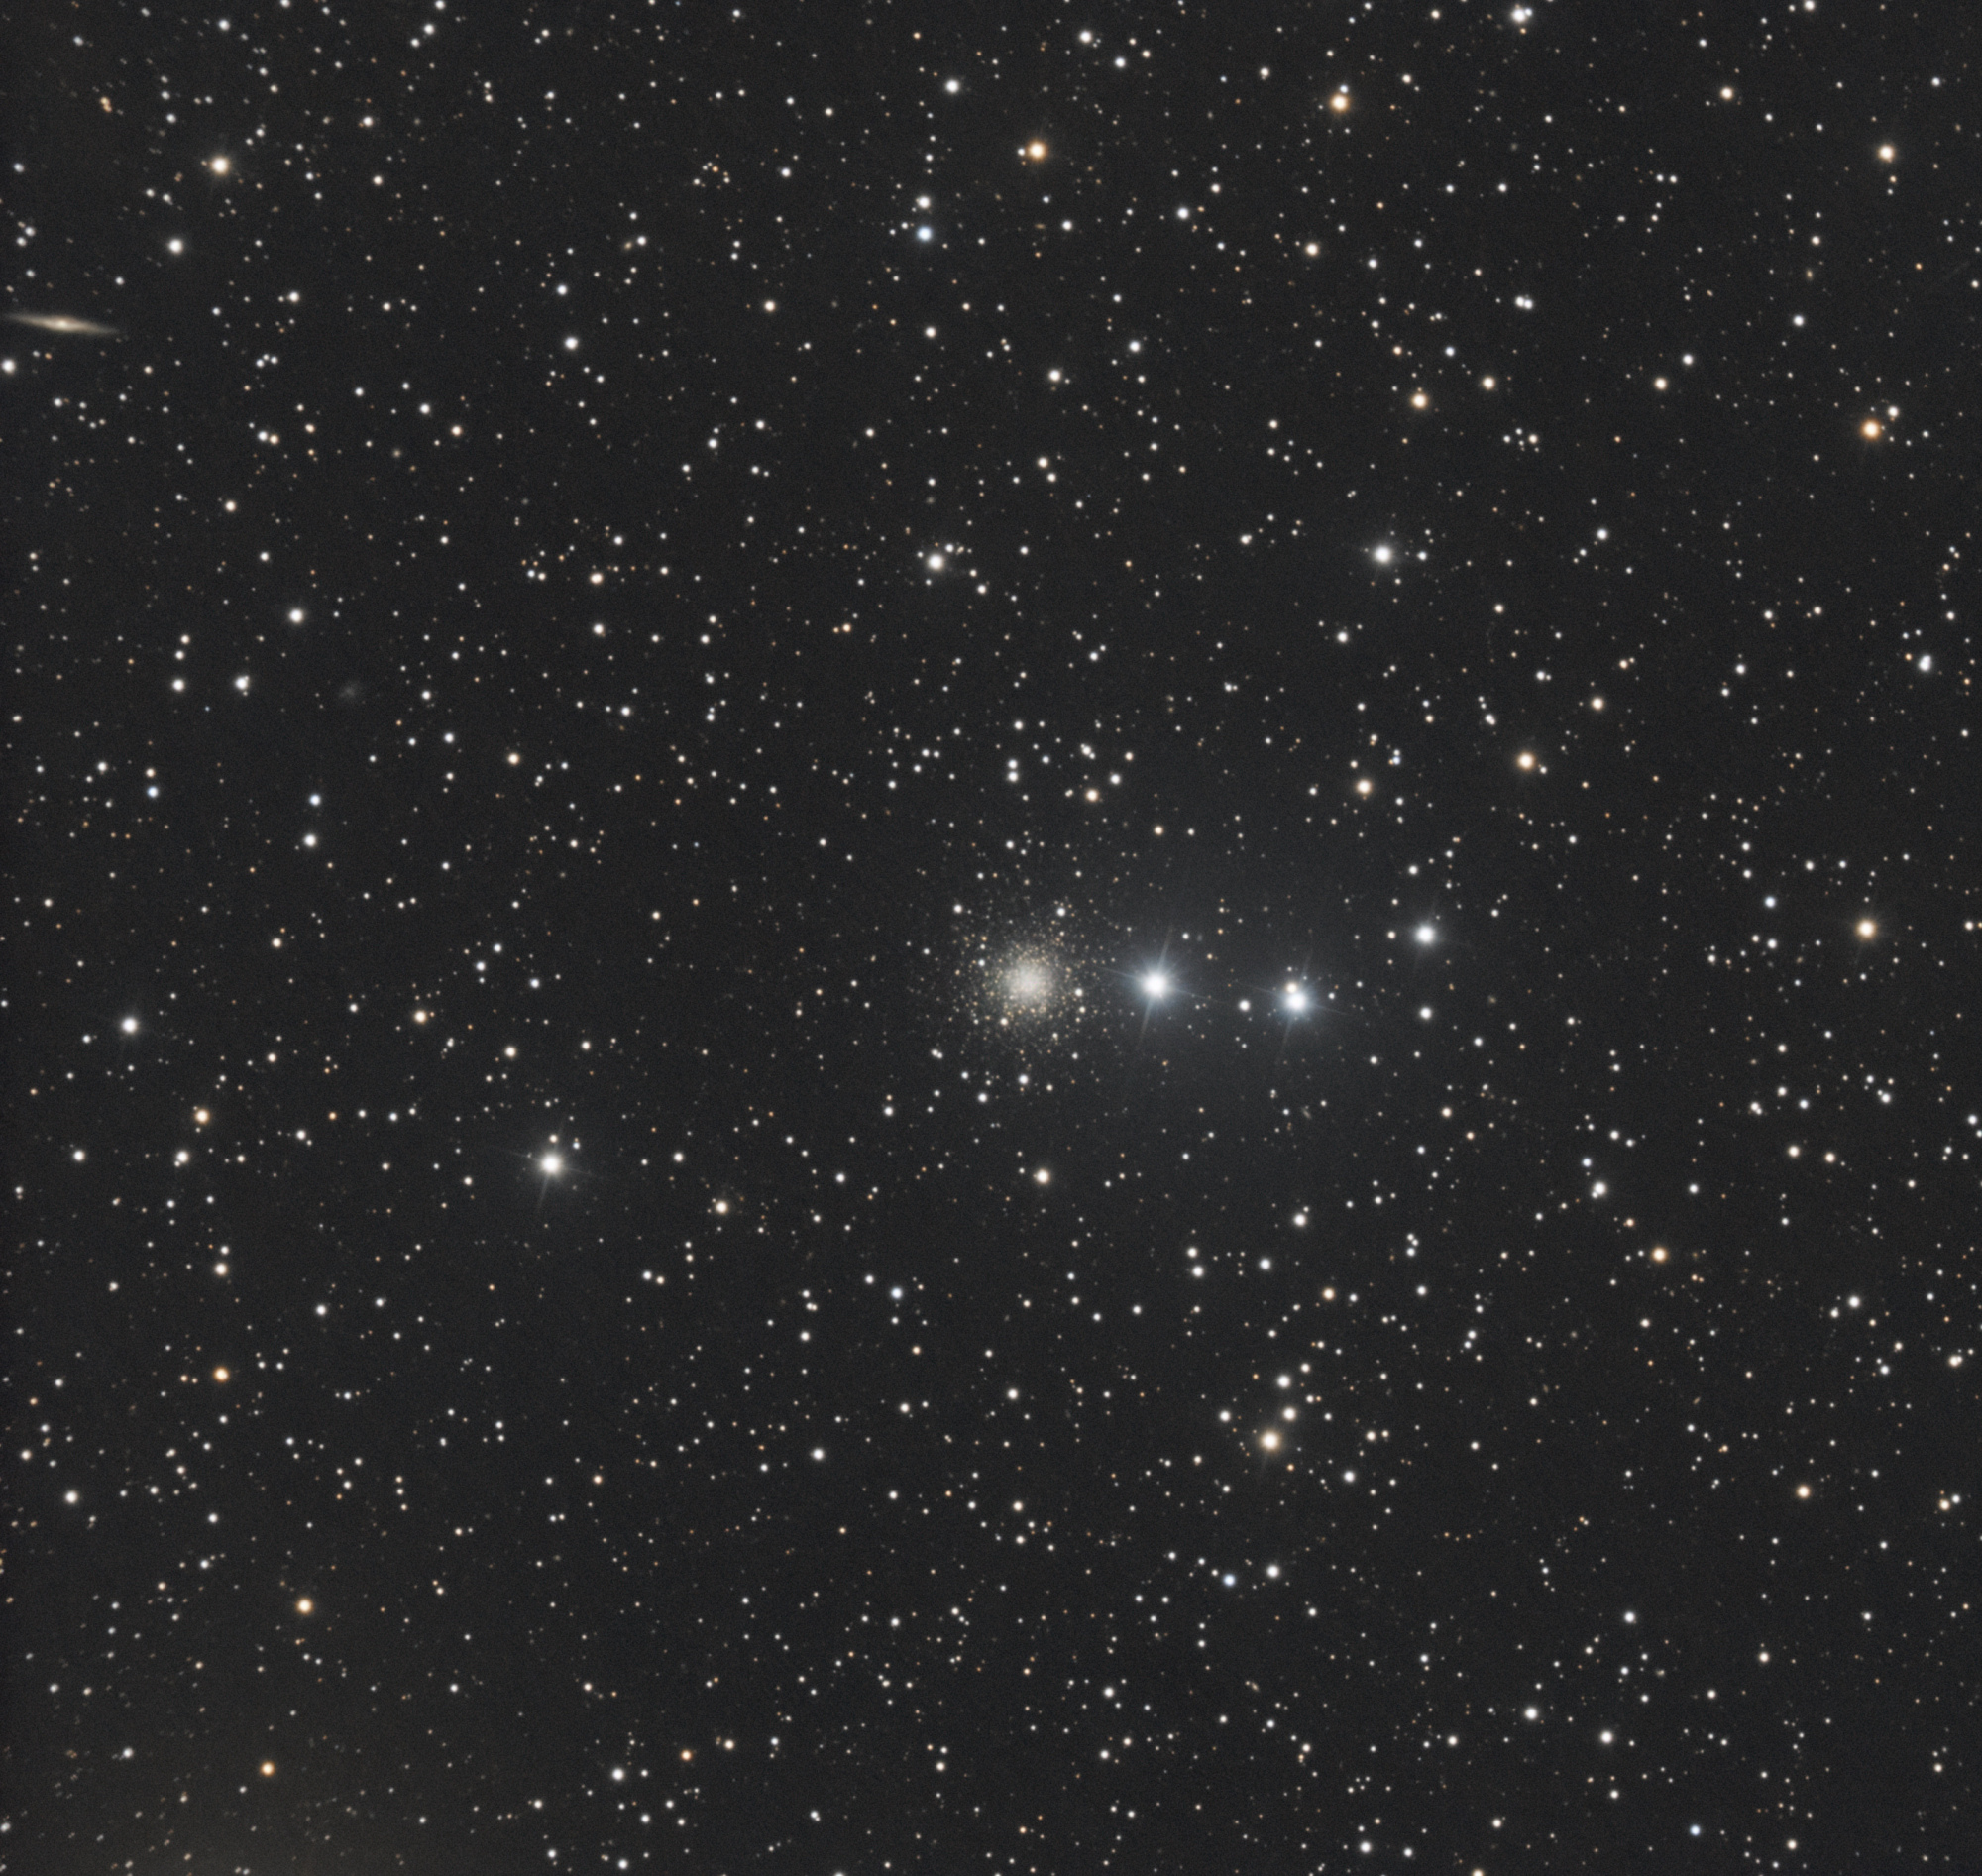 65b553286e21f_NGC2419_mix-FranckStphane-2-cs5-3-FINAL.thumb.jpg.96df4683d097c14dc8492a6d7d721c22.jpg